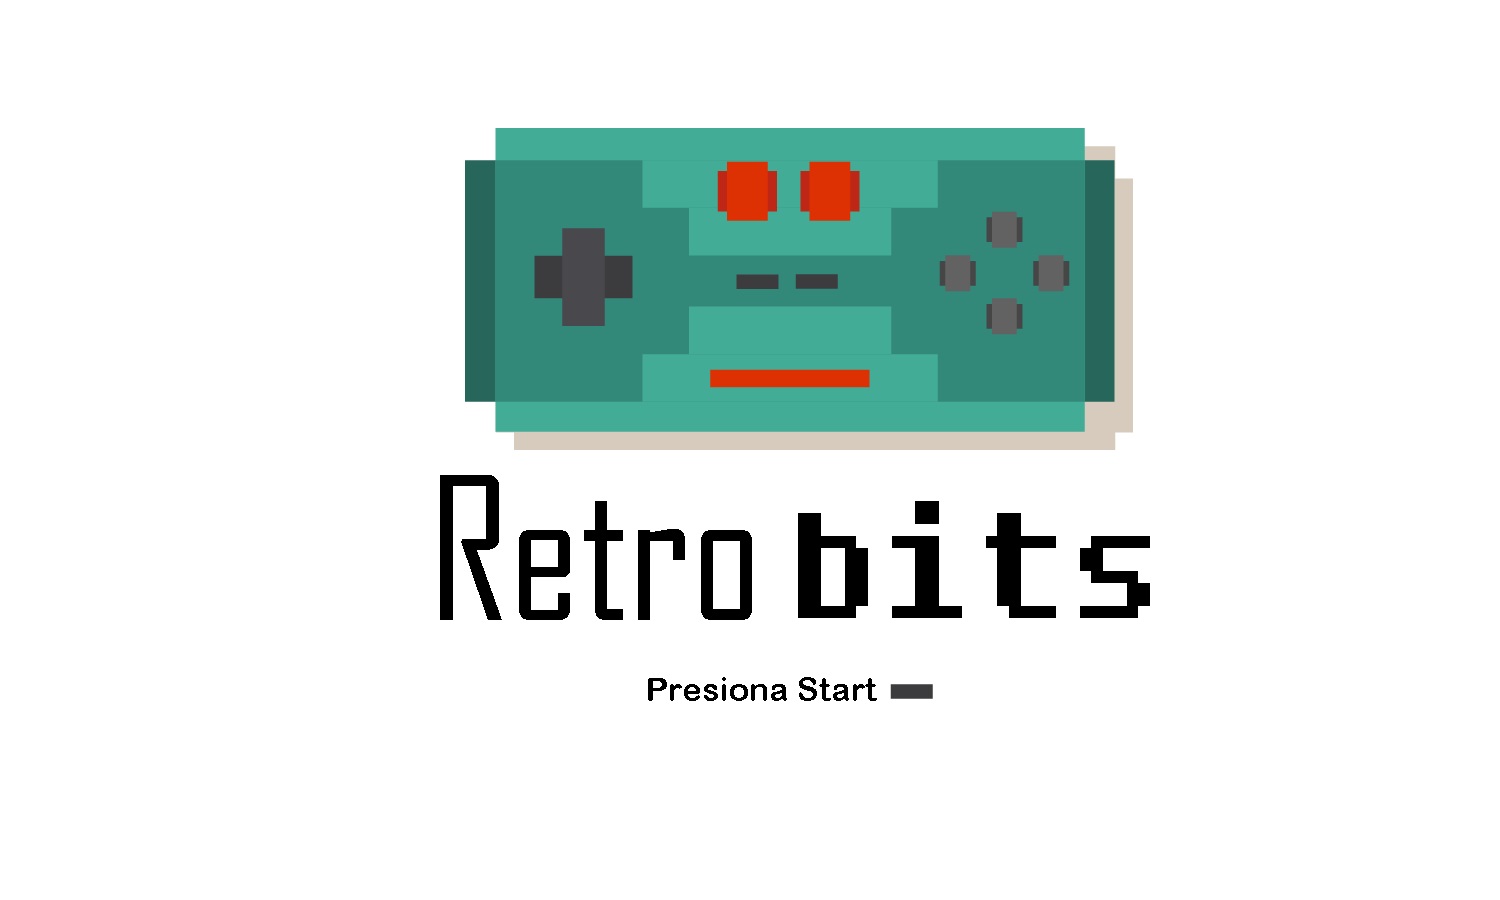 Retro bits - 10 de junio de 2019